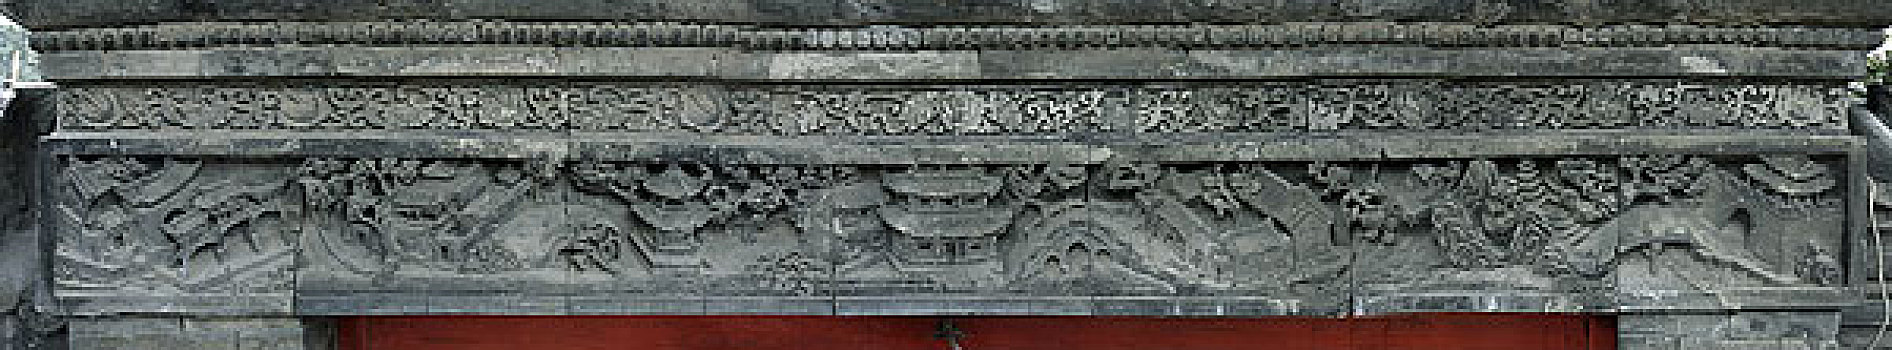 天津清真大寺砖雕